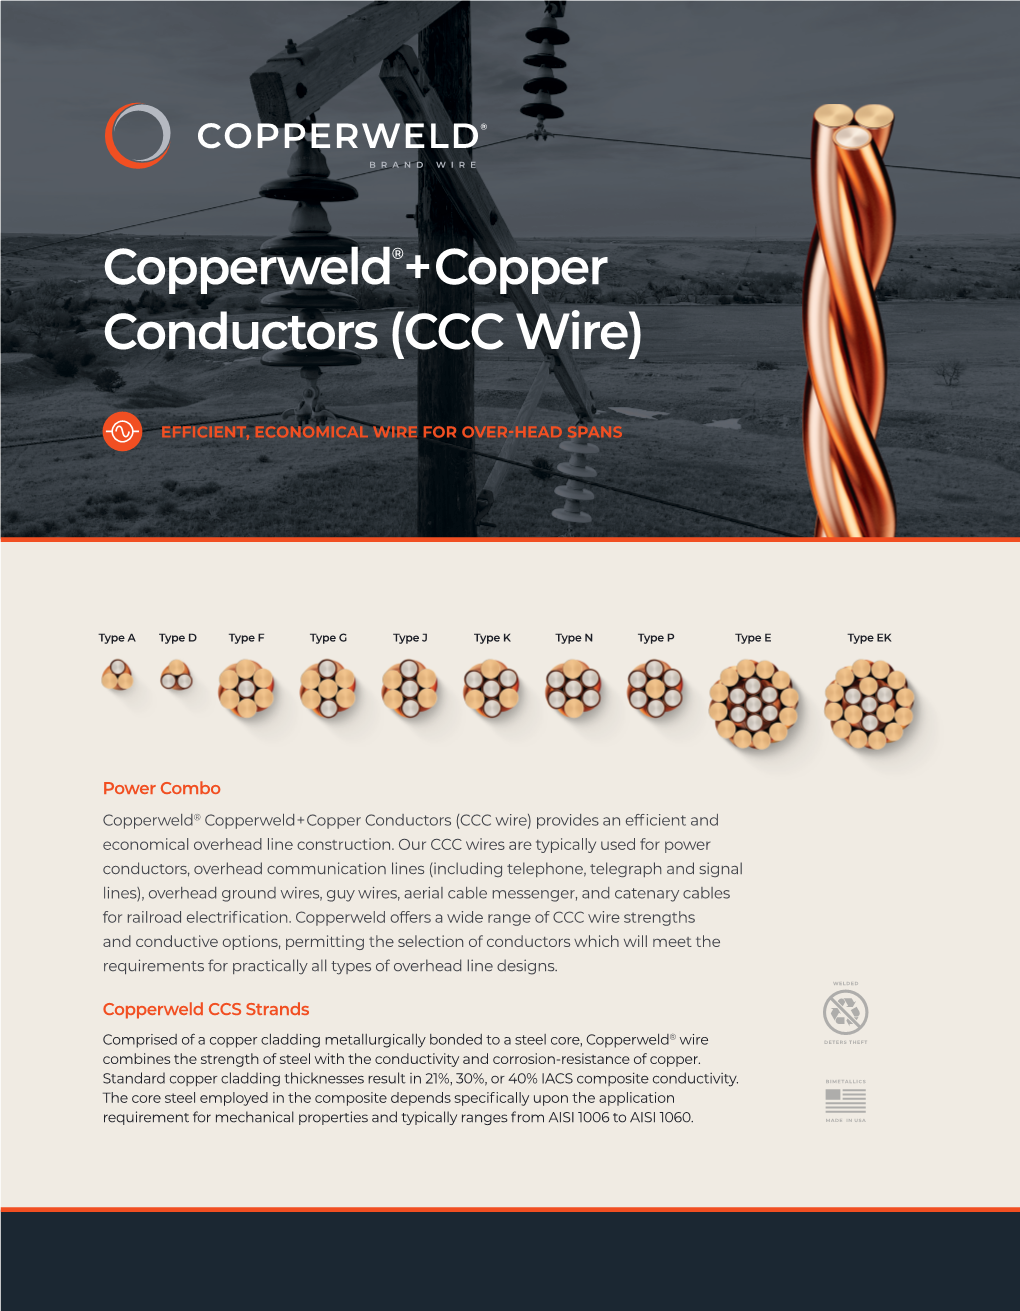 Copperweld®+Copper Conductors (CCC Wire)